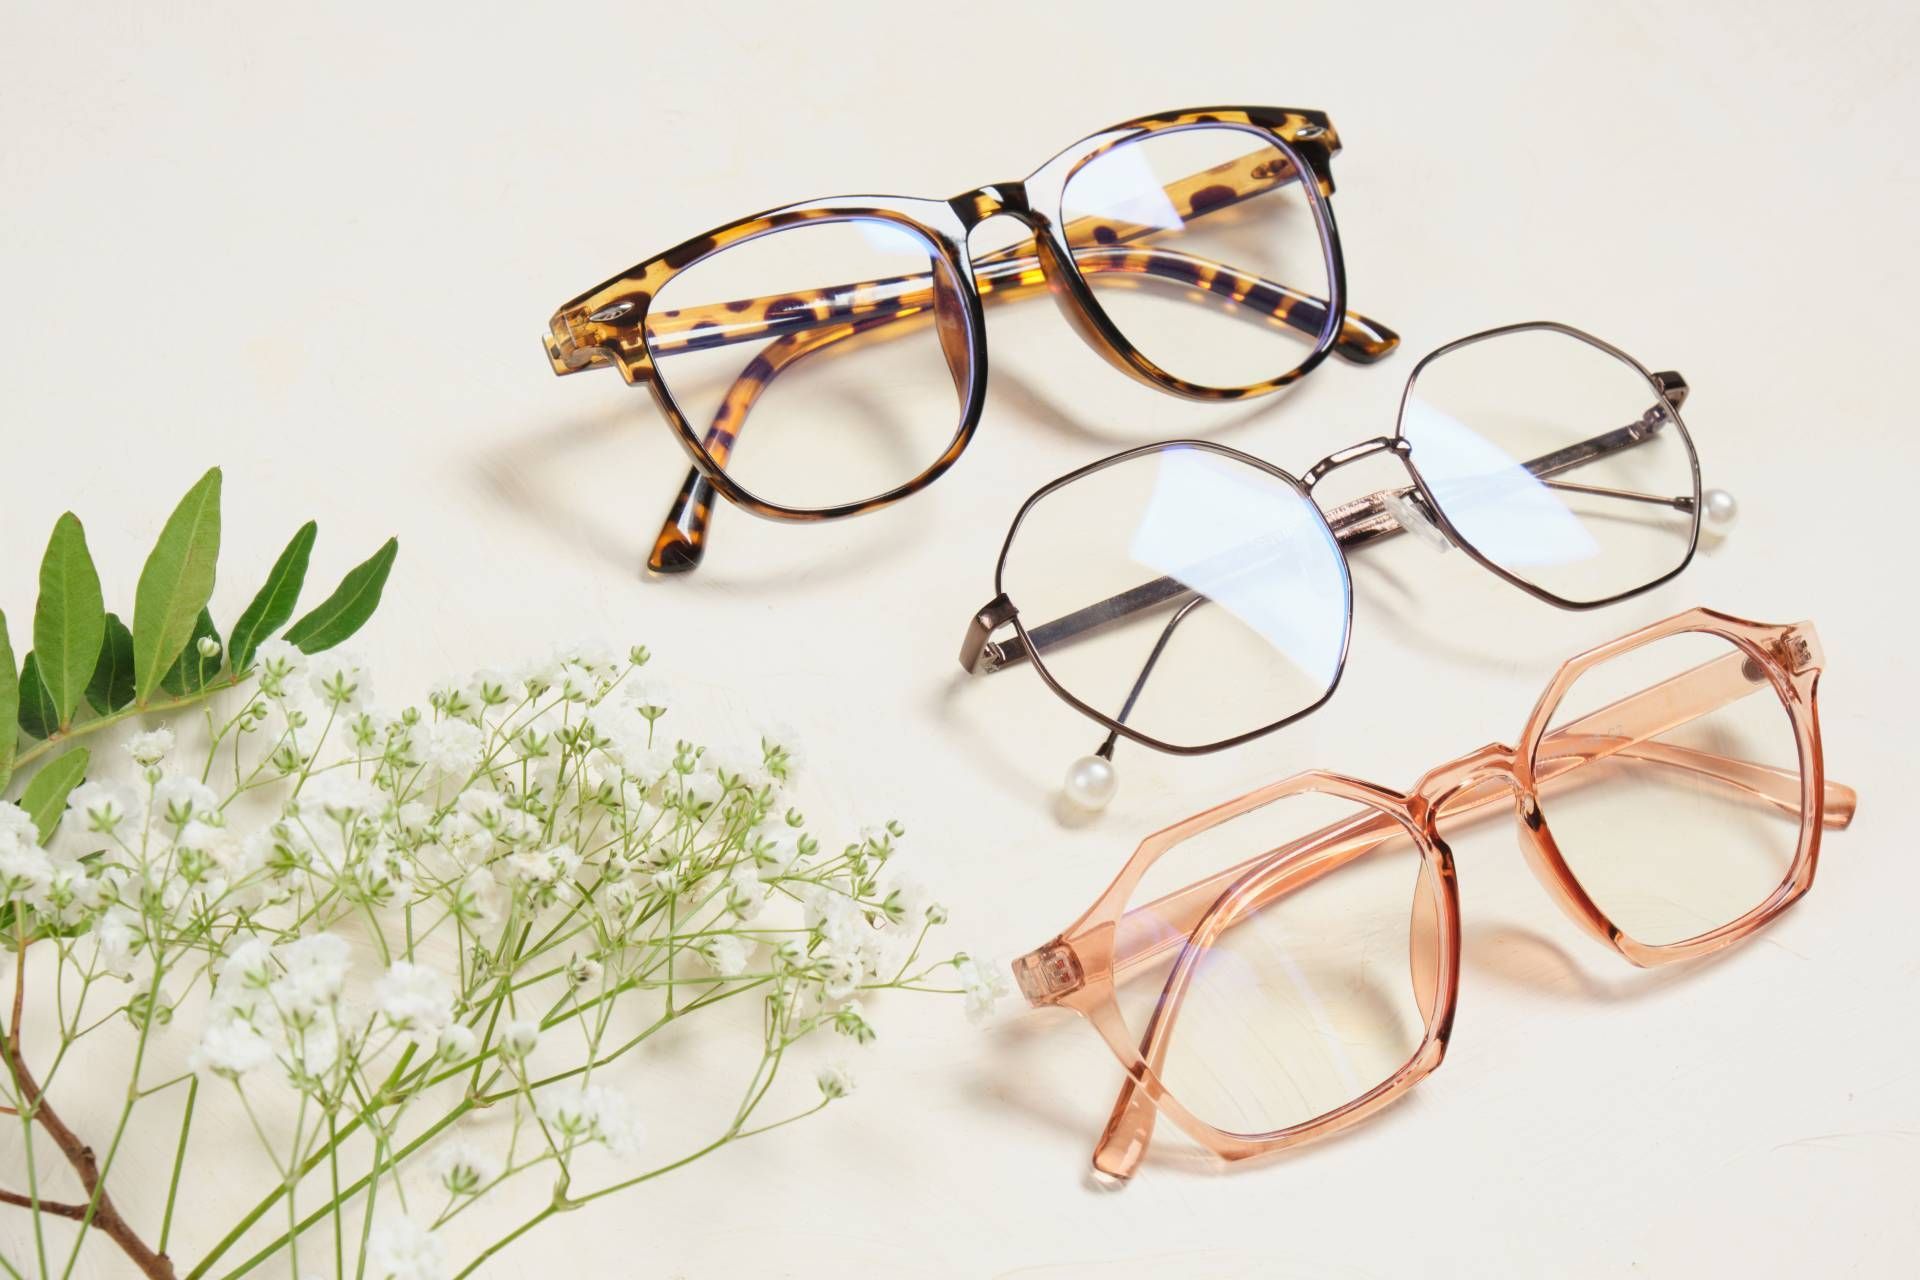 drei verschiedene Arten von Gläsern liegen nebeneinander